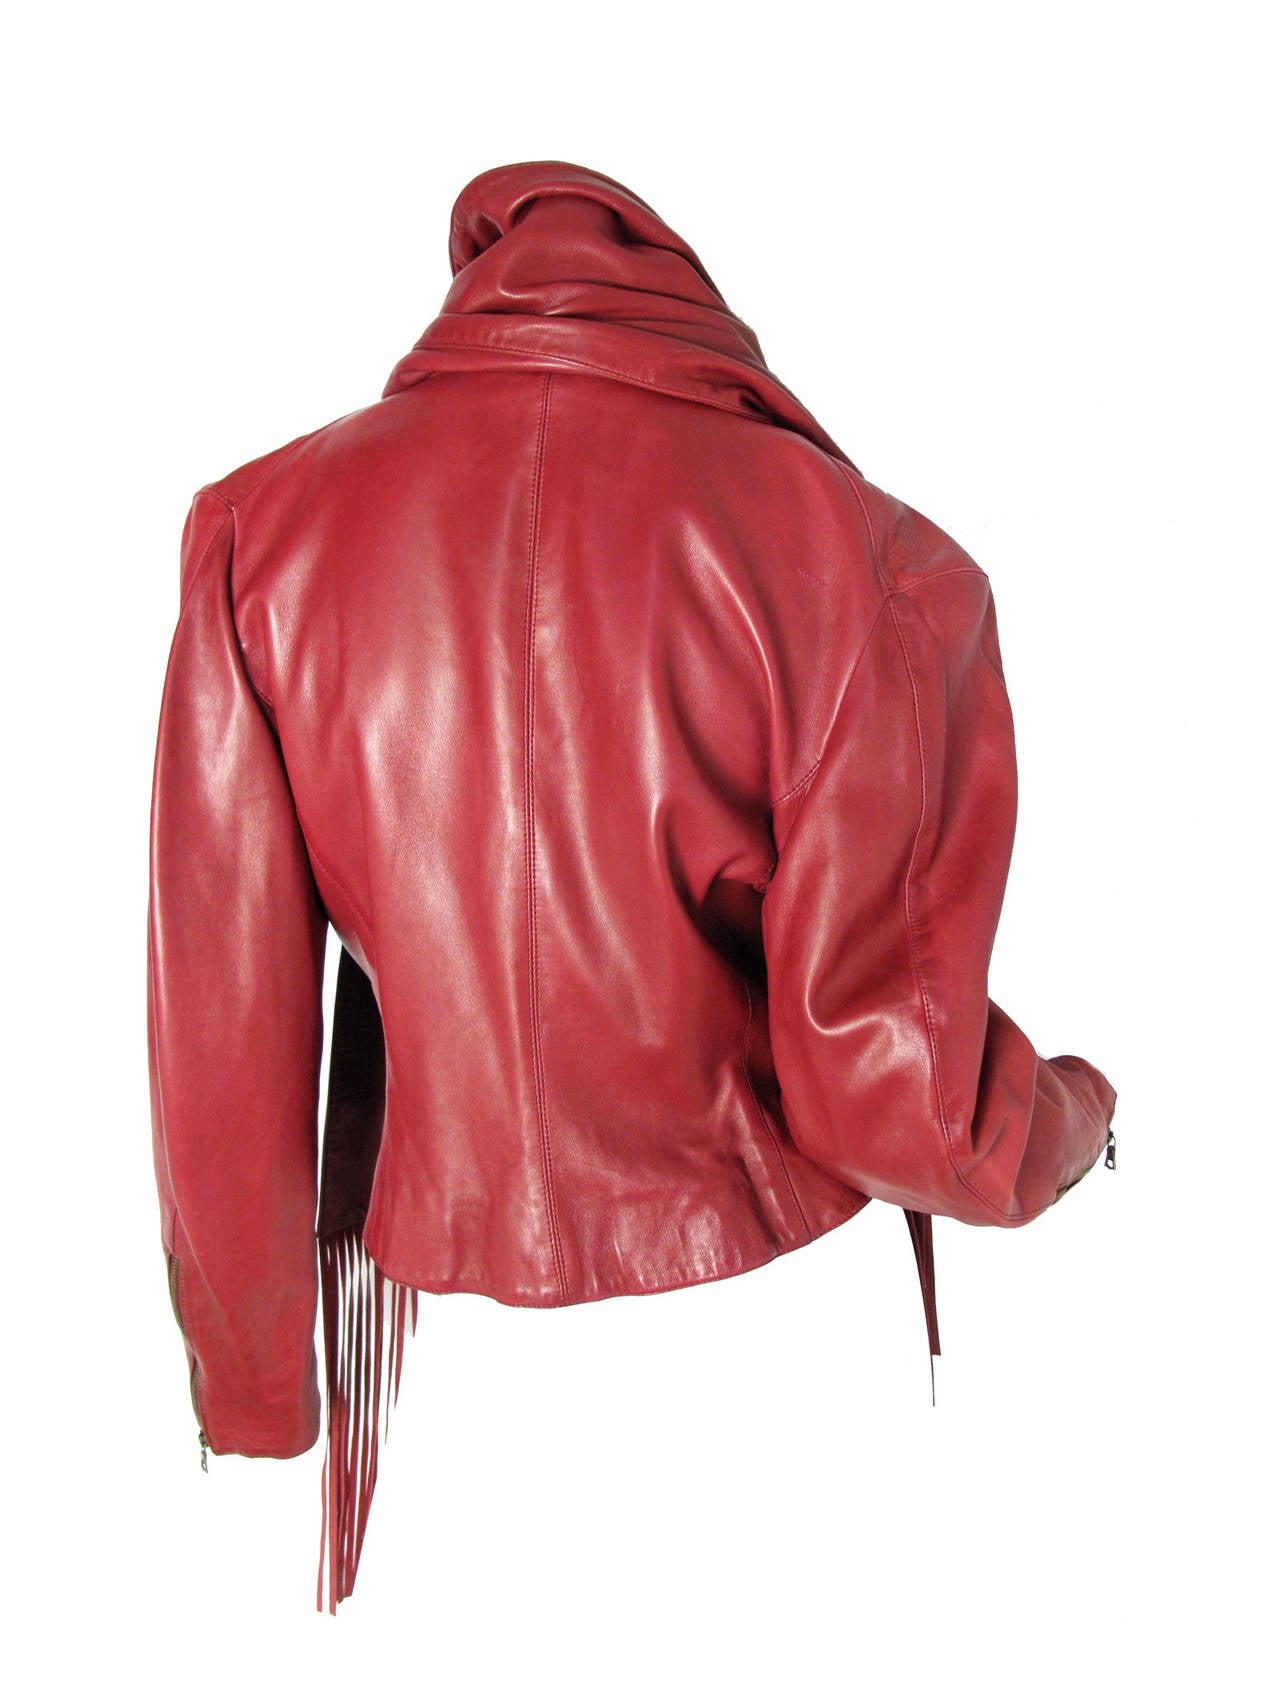 1980s Claude Montana wine colored fringe leather jacket 1